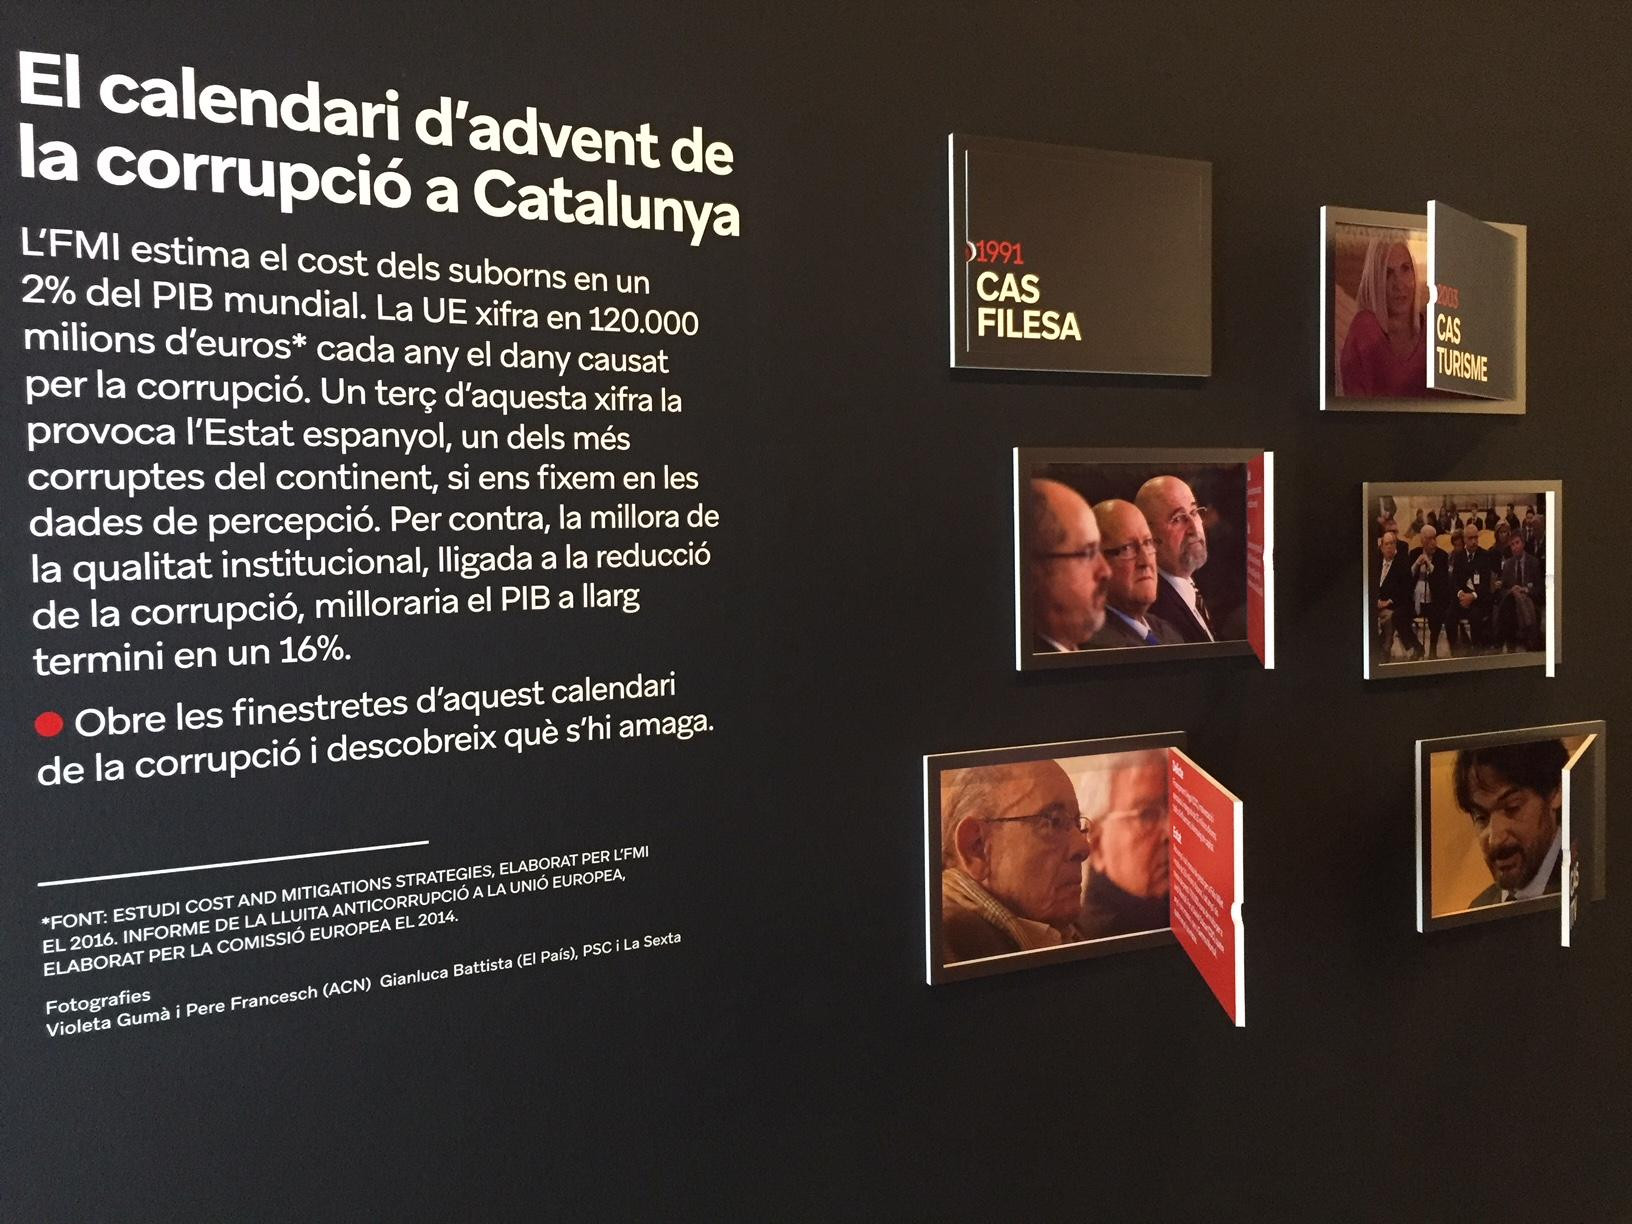 Imagen en la exposición sobre corrupción con los distintos casos en Cataluña / CG